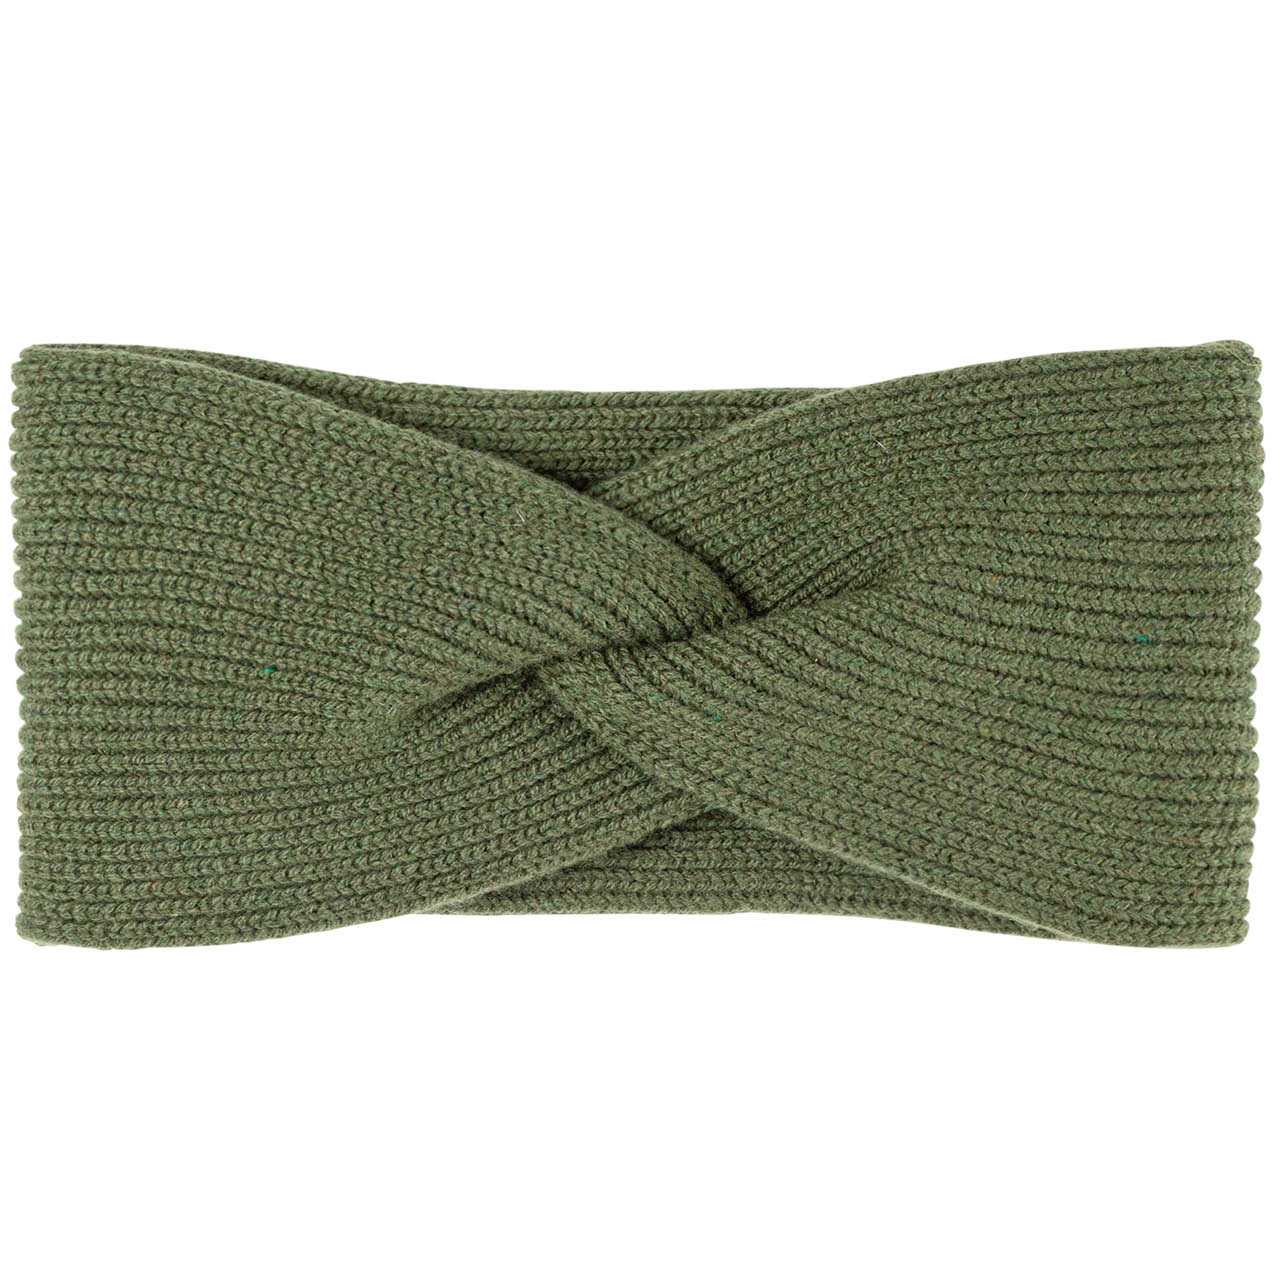 Damen Wolle Kaschmir Stirnband oliv-grün